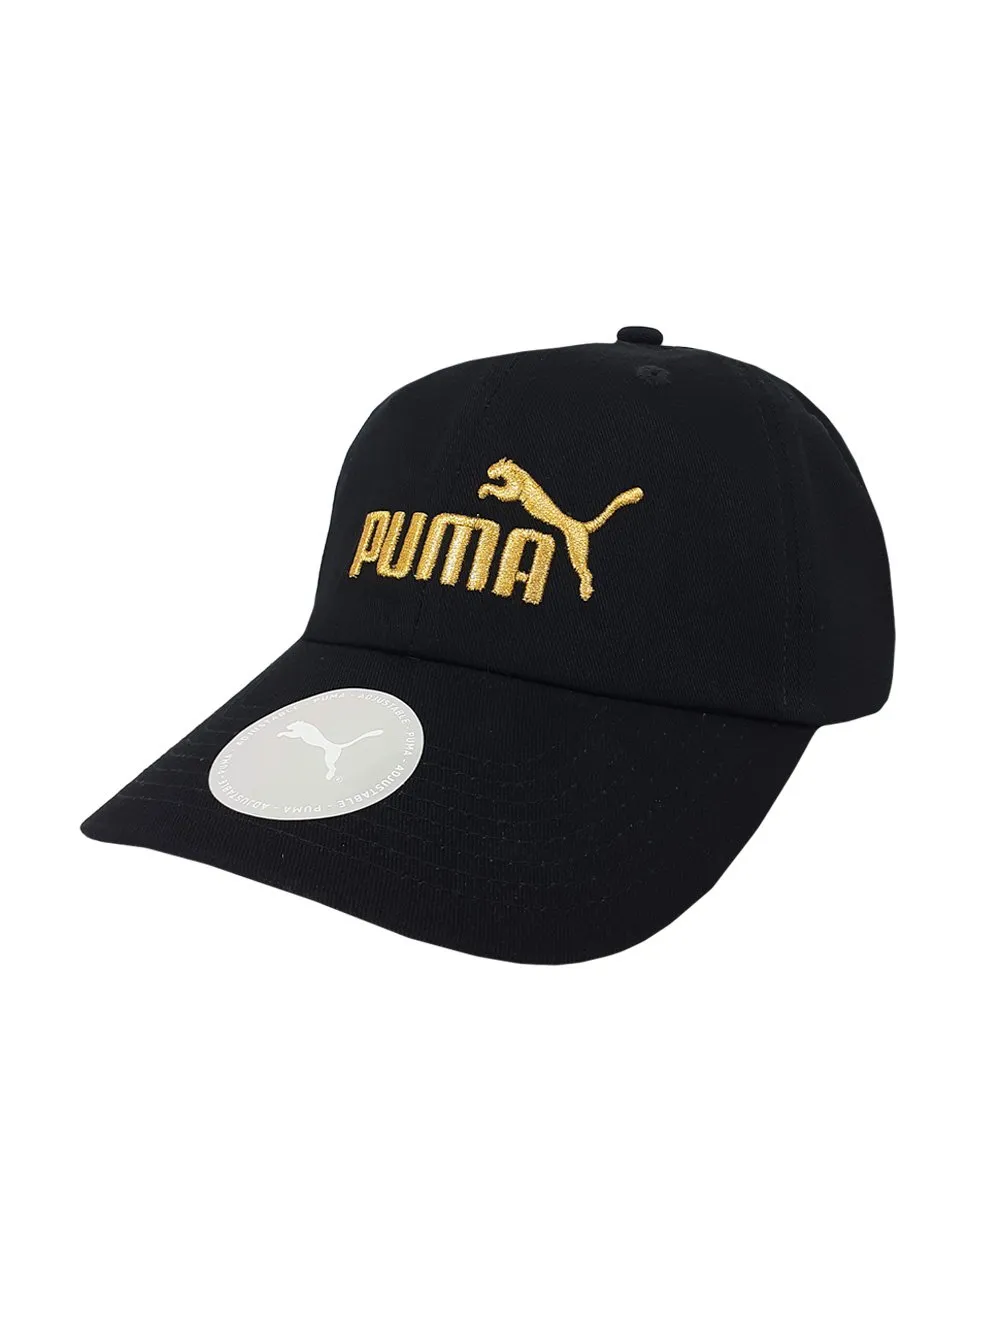 Boné Puma Logo Essentials Gold Preto